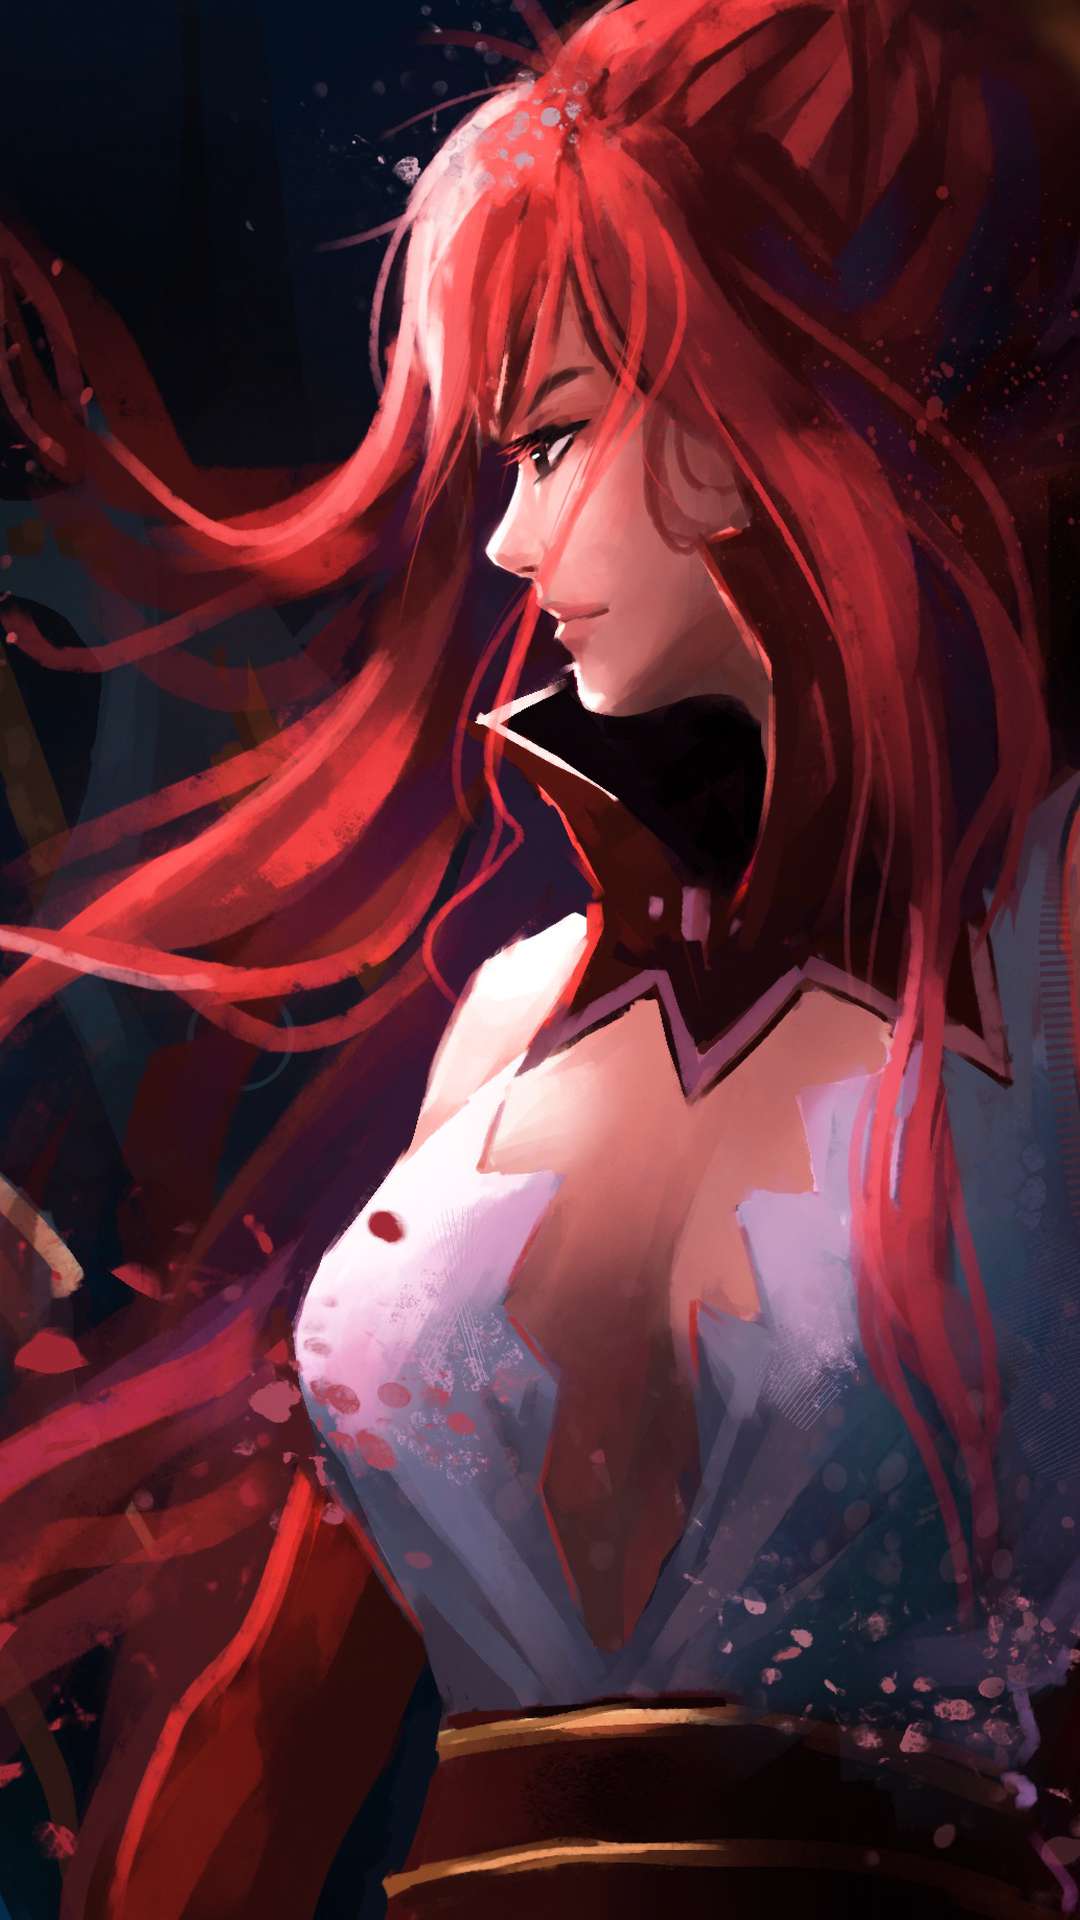 Hình nền  hình minh họa Anime thanh kiếm Fairy Tail Hồng NGHỆ THUẬT Hình  nền máy tính Mangaka Erza scarlet Mage 1920x1080  wallhaven  579678  Hình  nền đẹp hd  WallHere